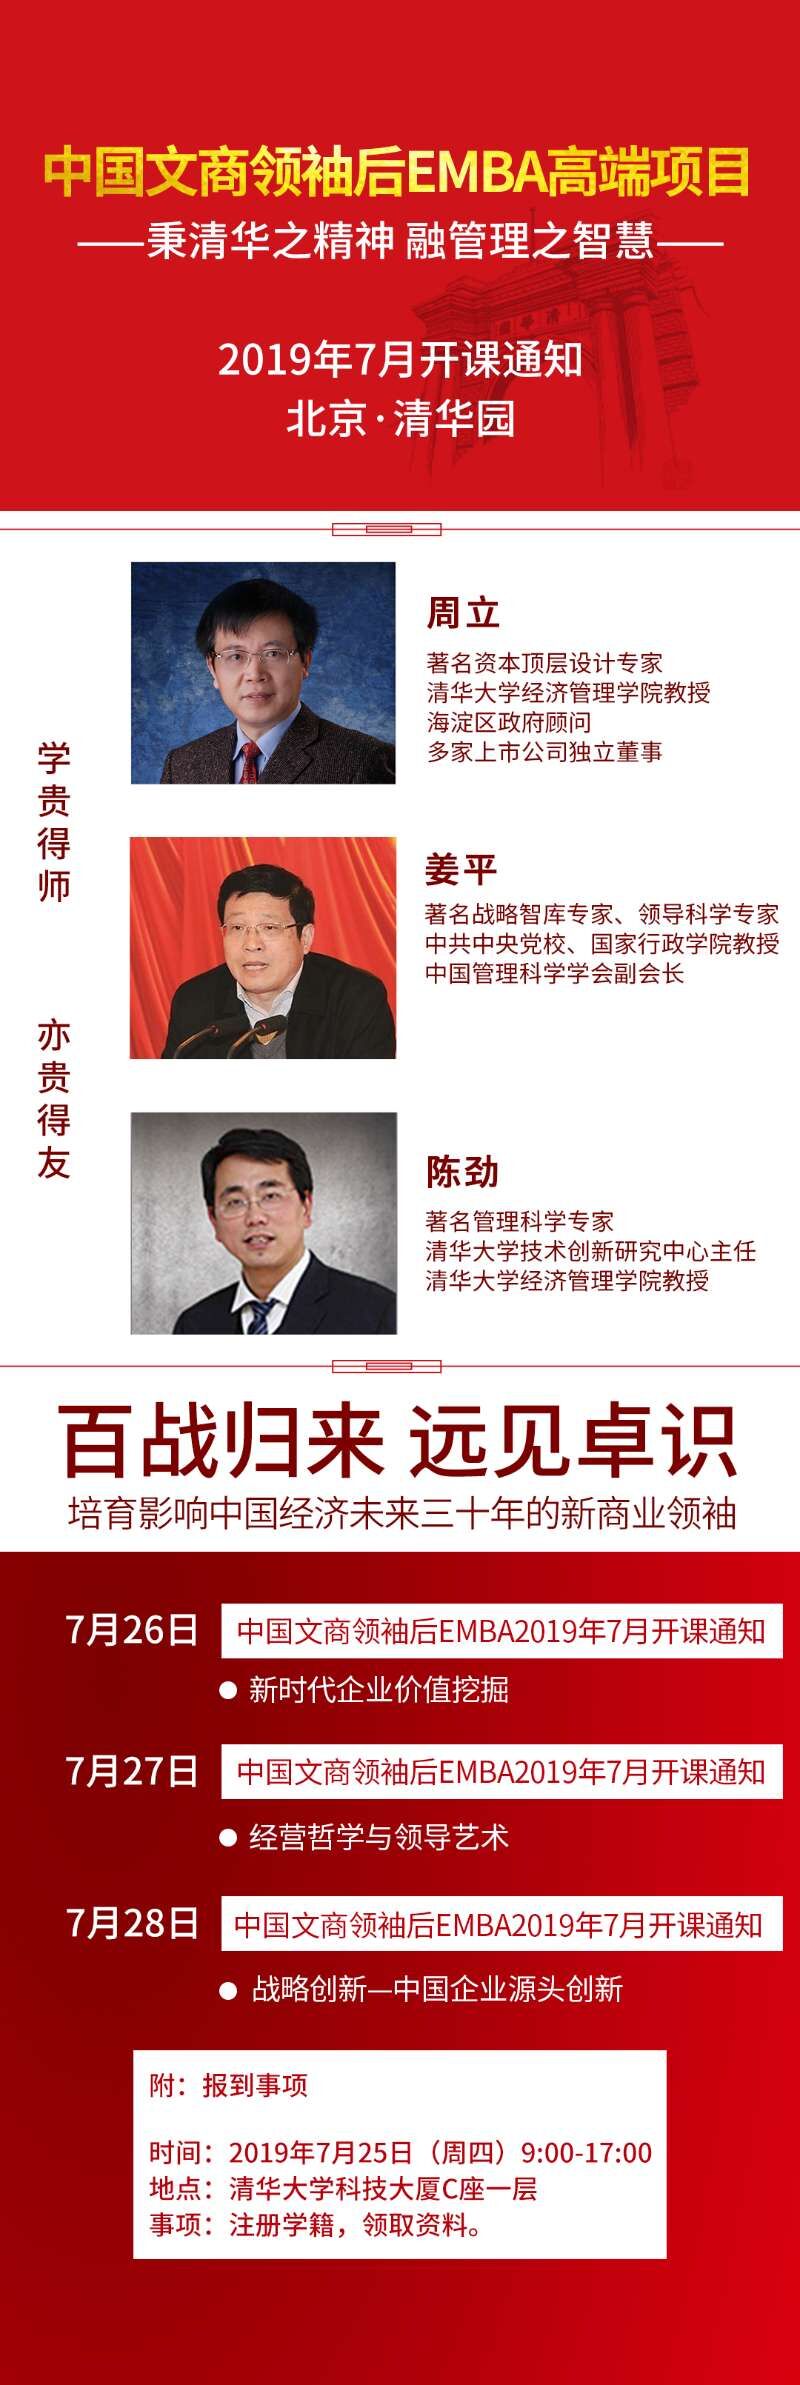 清华大学中国文商领袖EMBA总裁班2019年7月份开课通知表